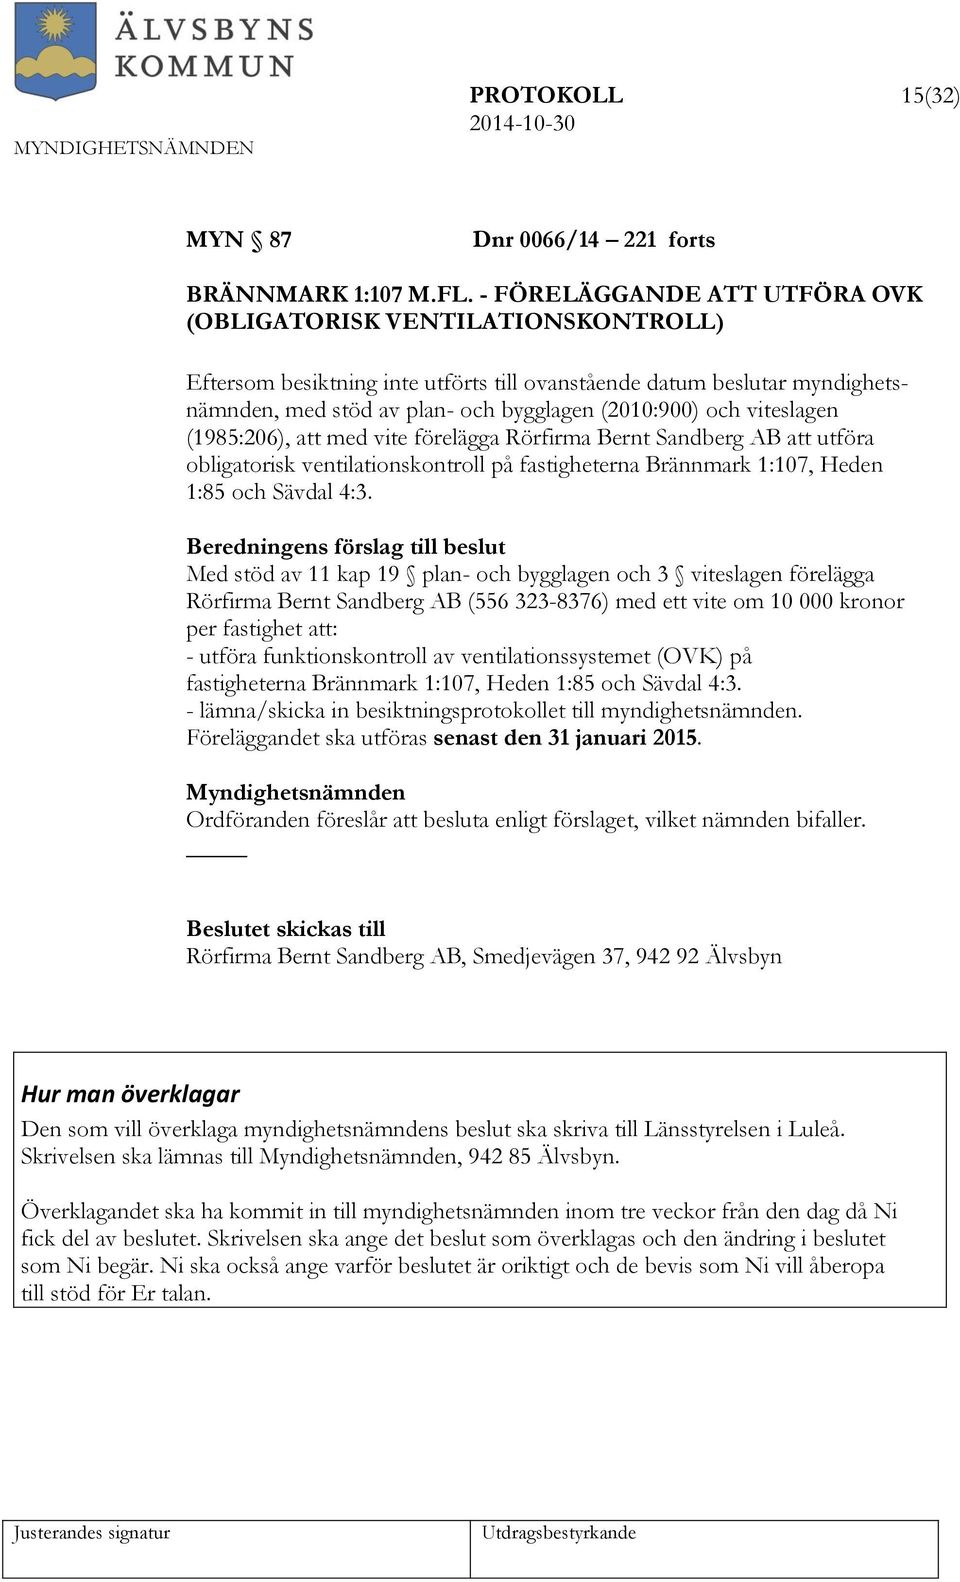 viteslagen (1985:206), att med vite förelägga Rörfirma Bernt Sandberg AB att utföra obligatorisk ventilationskontroll på fastigheterna Brännmark 1:107, Heden 1:85 och Sävdal 4:3.